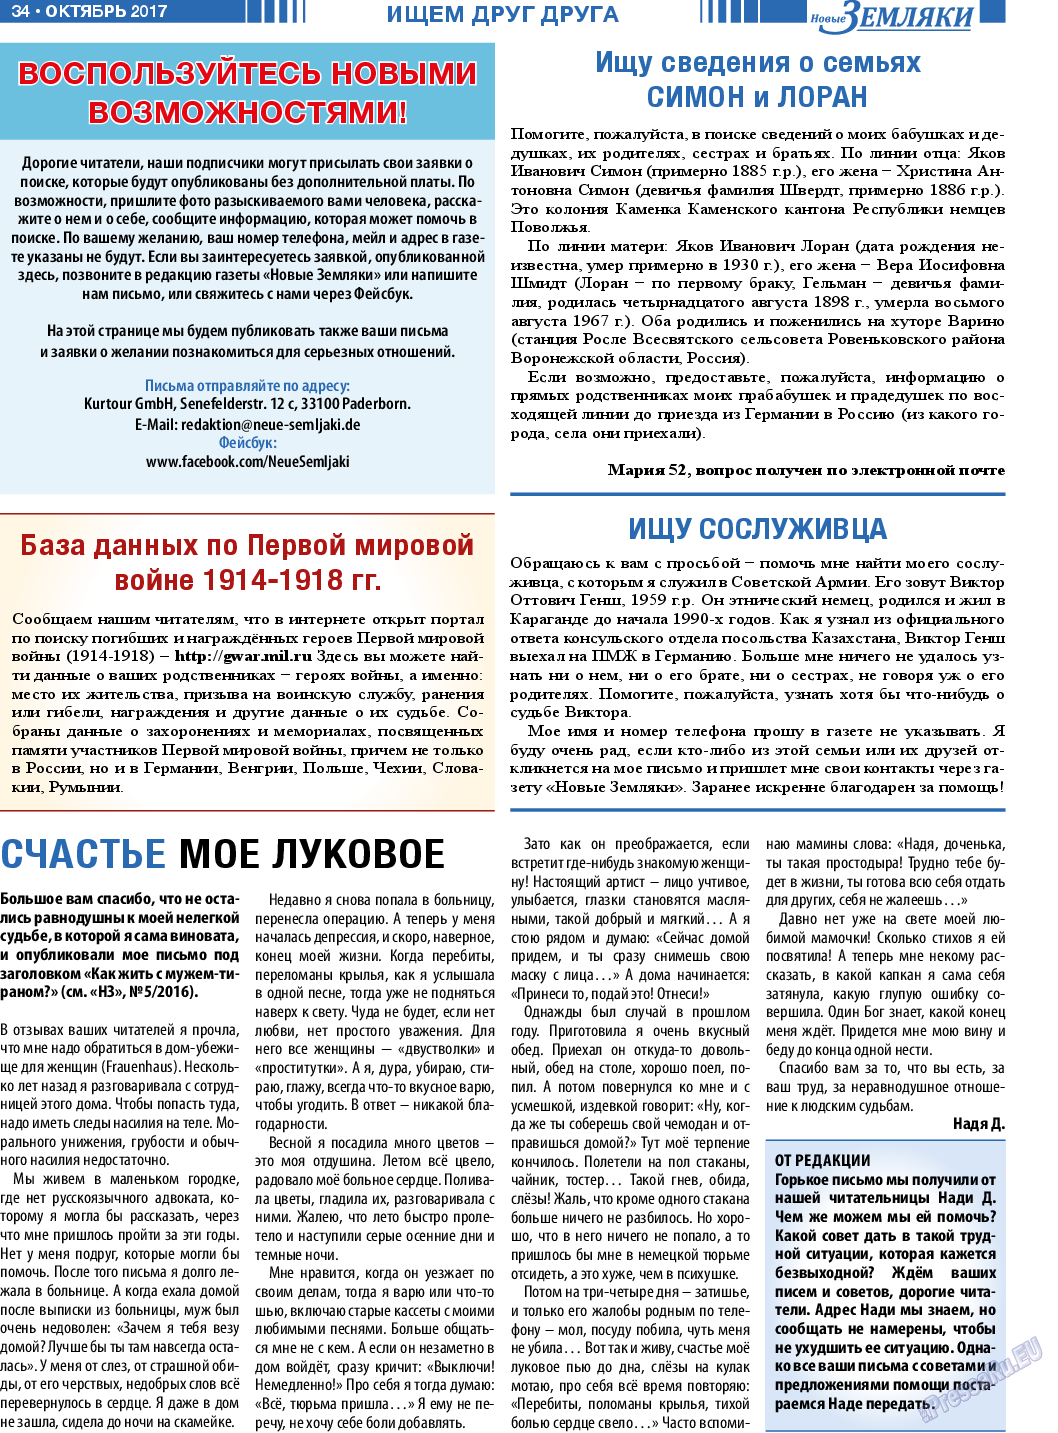 Новые Земляки, газета. 2017 №10 стр.34